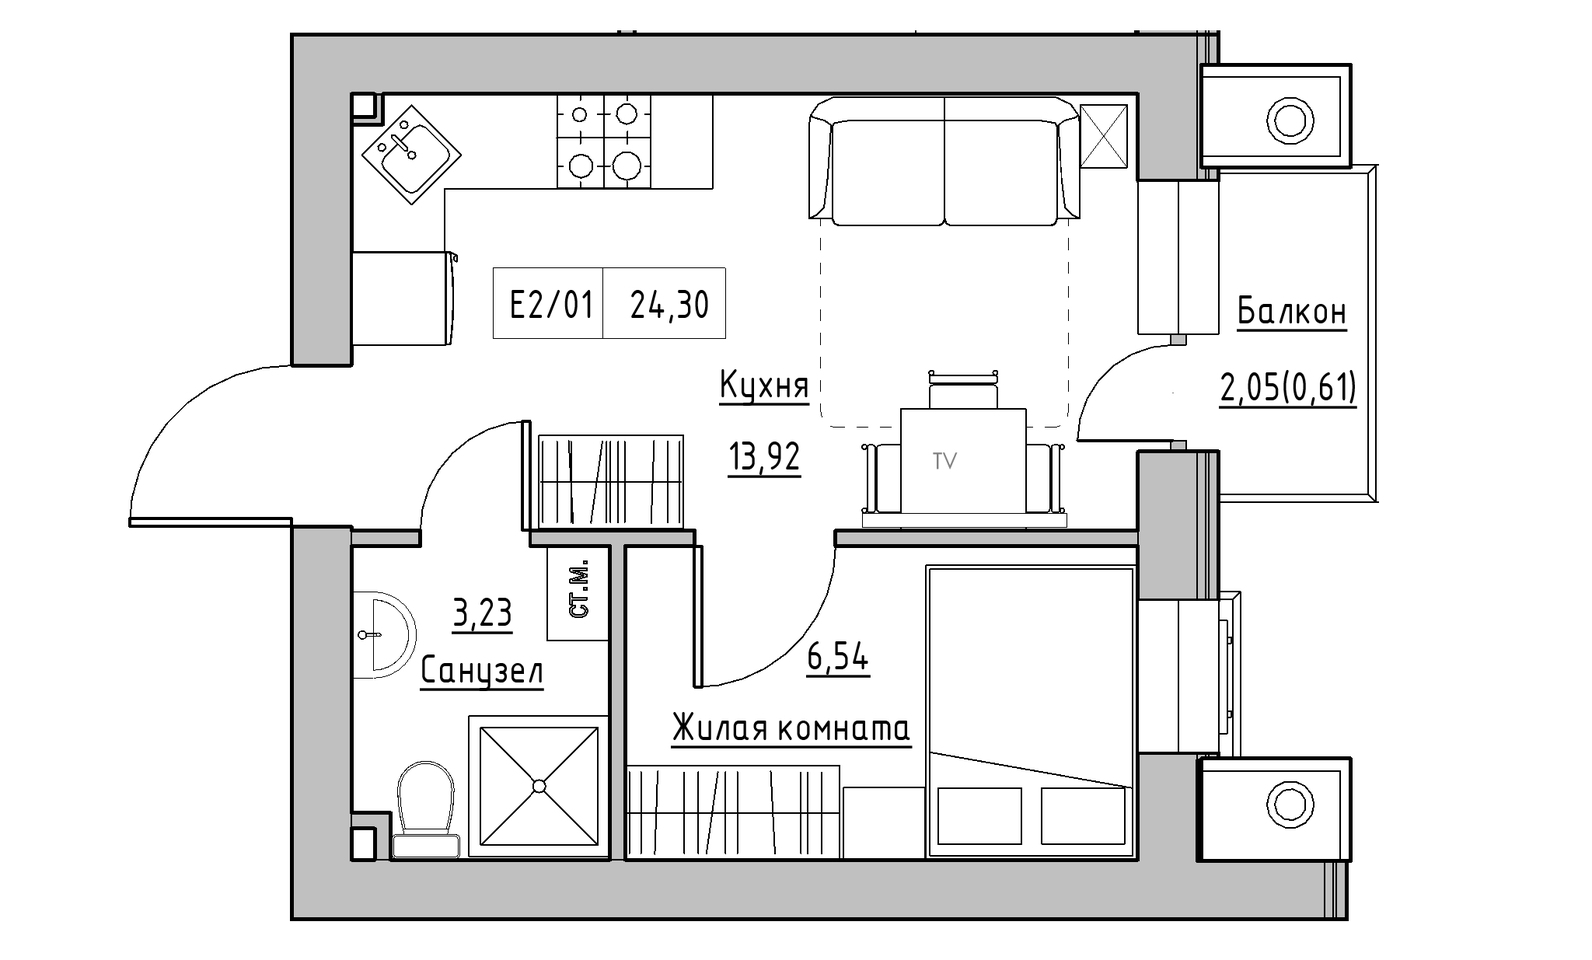 Планування 1-к квартира площею 24.3м2, KS-014-03/0009.